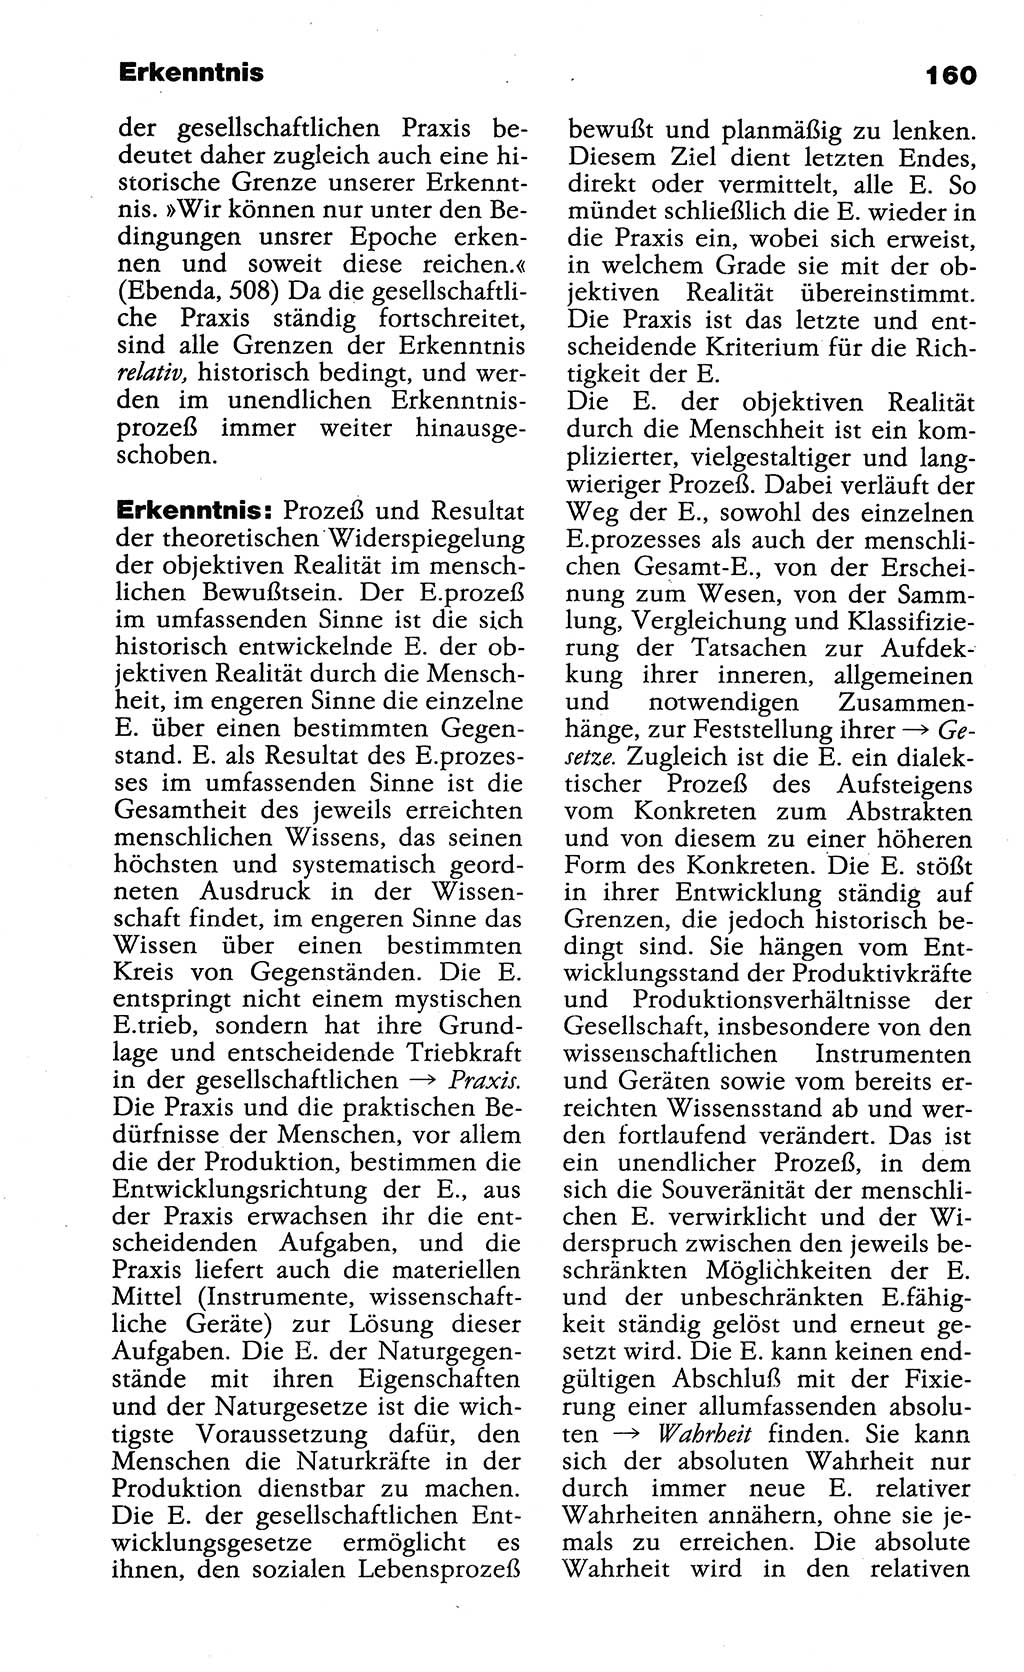 Wörterbuch der marxistisch-leninistischen Philosophie [Deutsche Demokratische Republik (DDR)] 1985, Seite 160 (Wb. ML Phil. DDR 1985, S. 160)